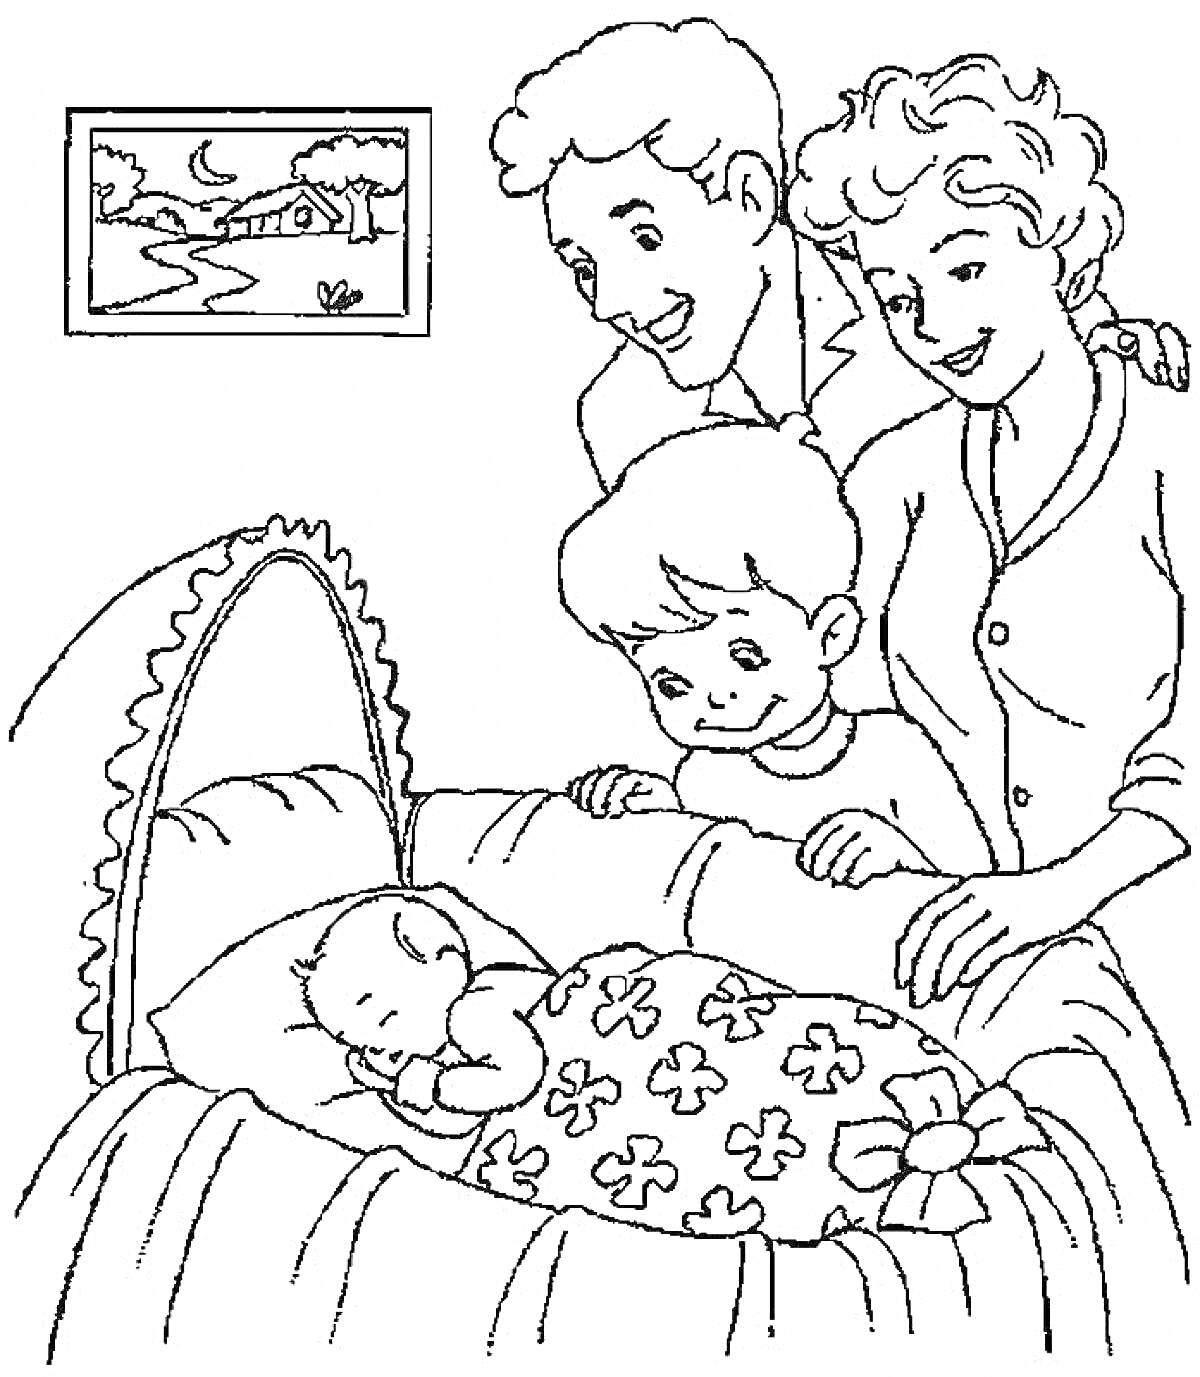 Раскраска Семья возле кроватки с младенцем, мама, папа, старший брат и маленький ребенок, картина на стене с пейзажем